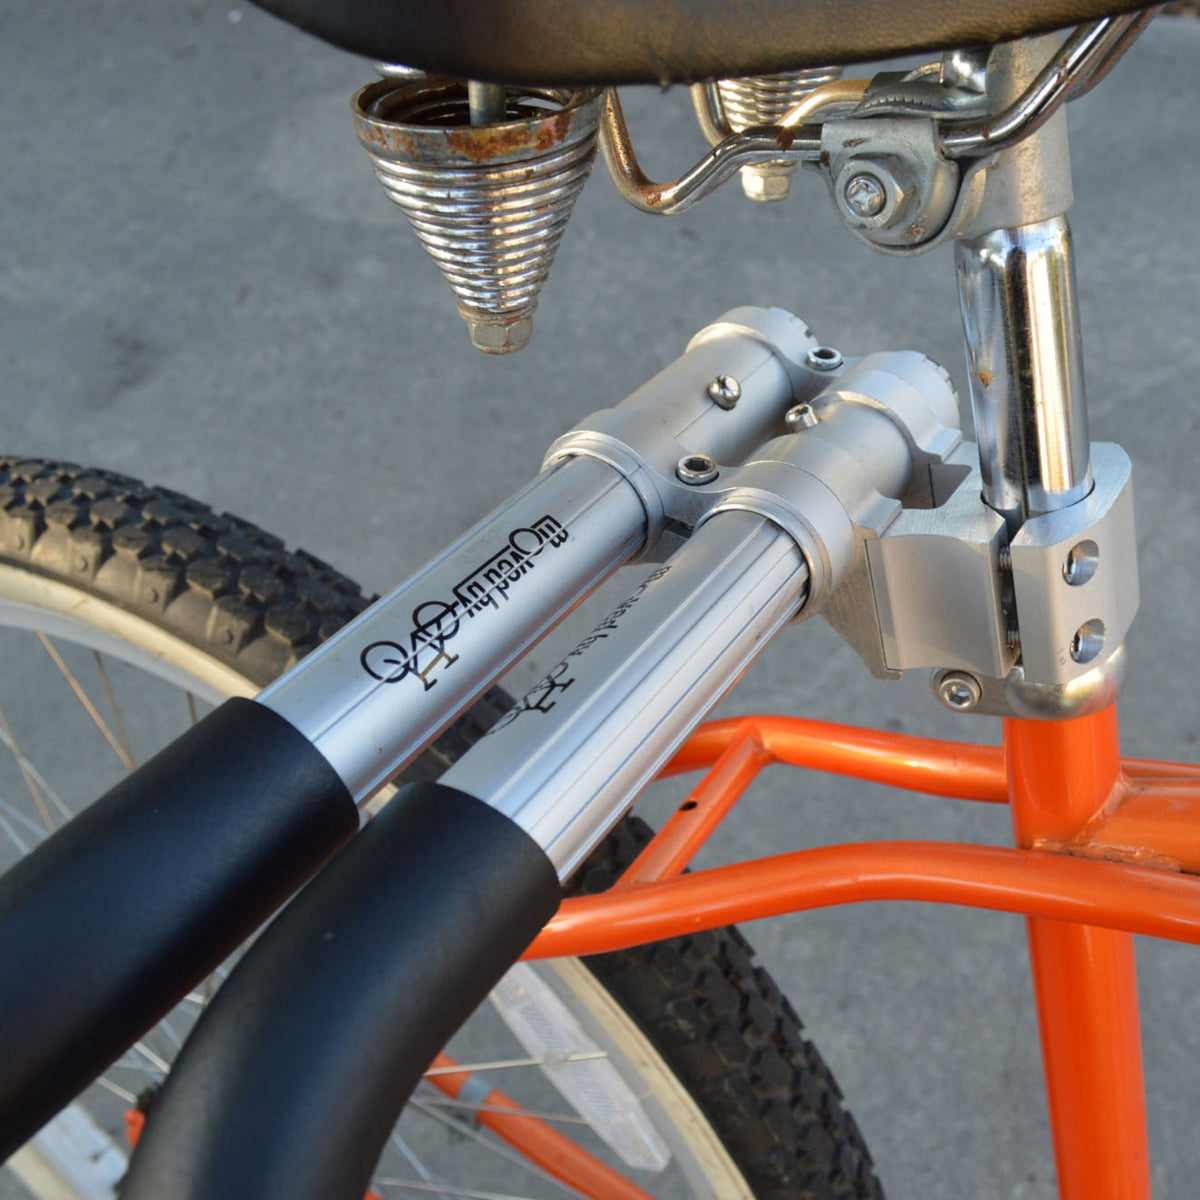 
                  
                    Bike Rack - Moved By Bikes Short Board Bike Rack
                  
                